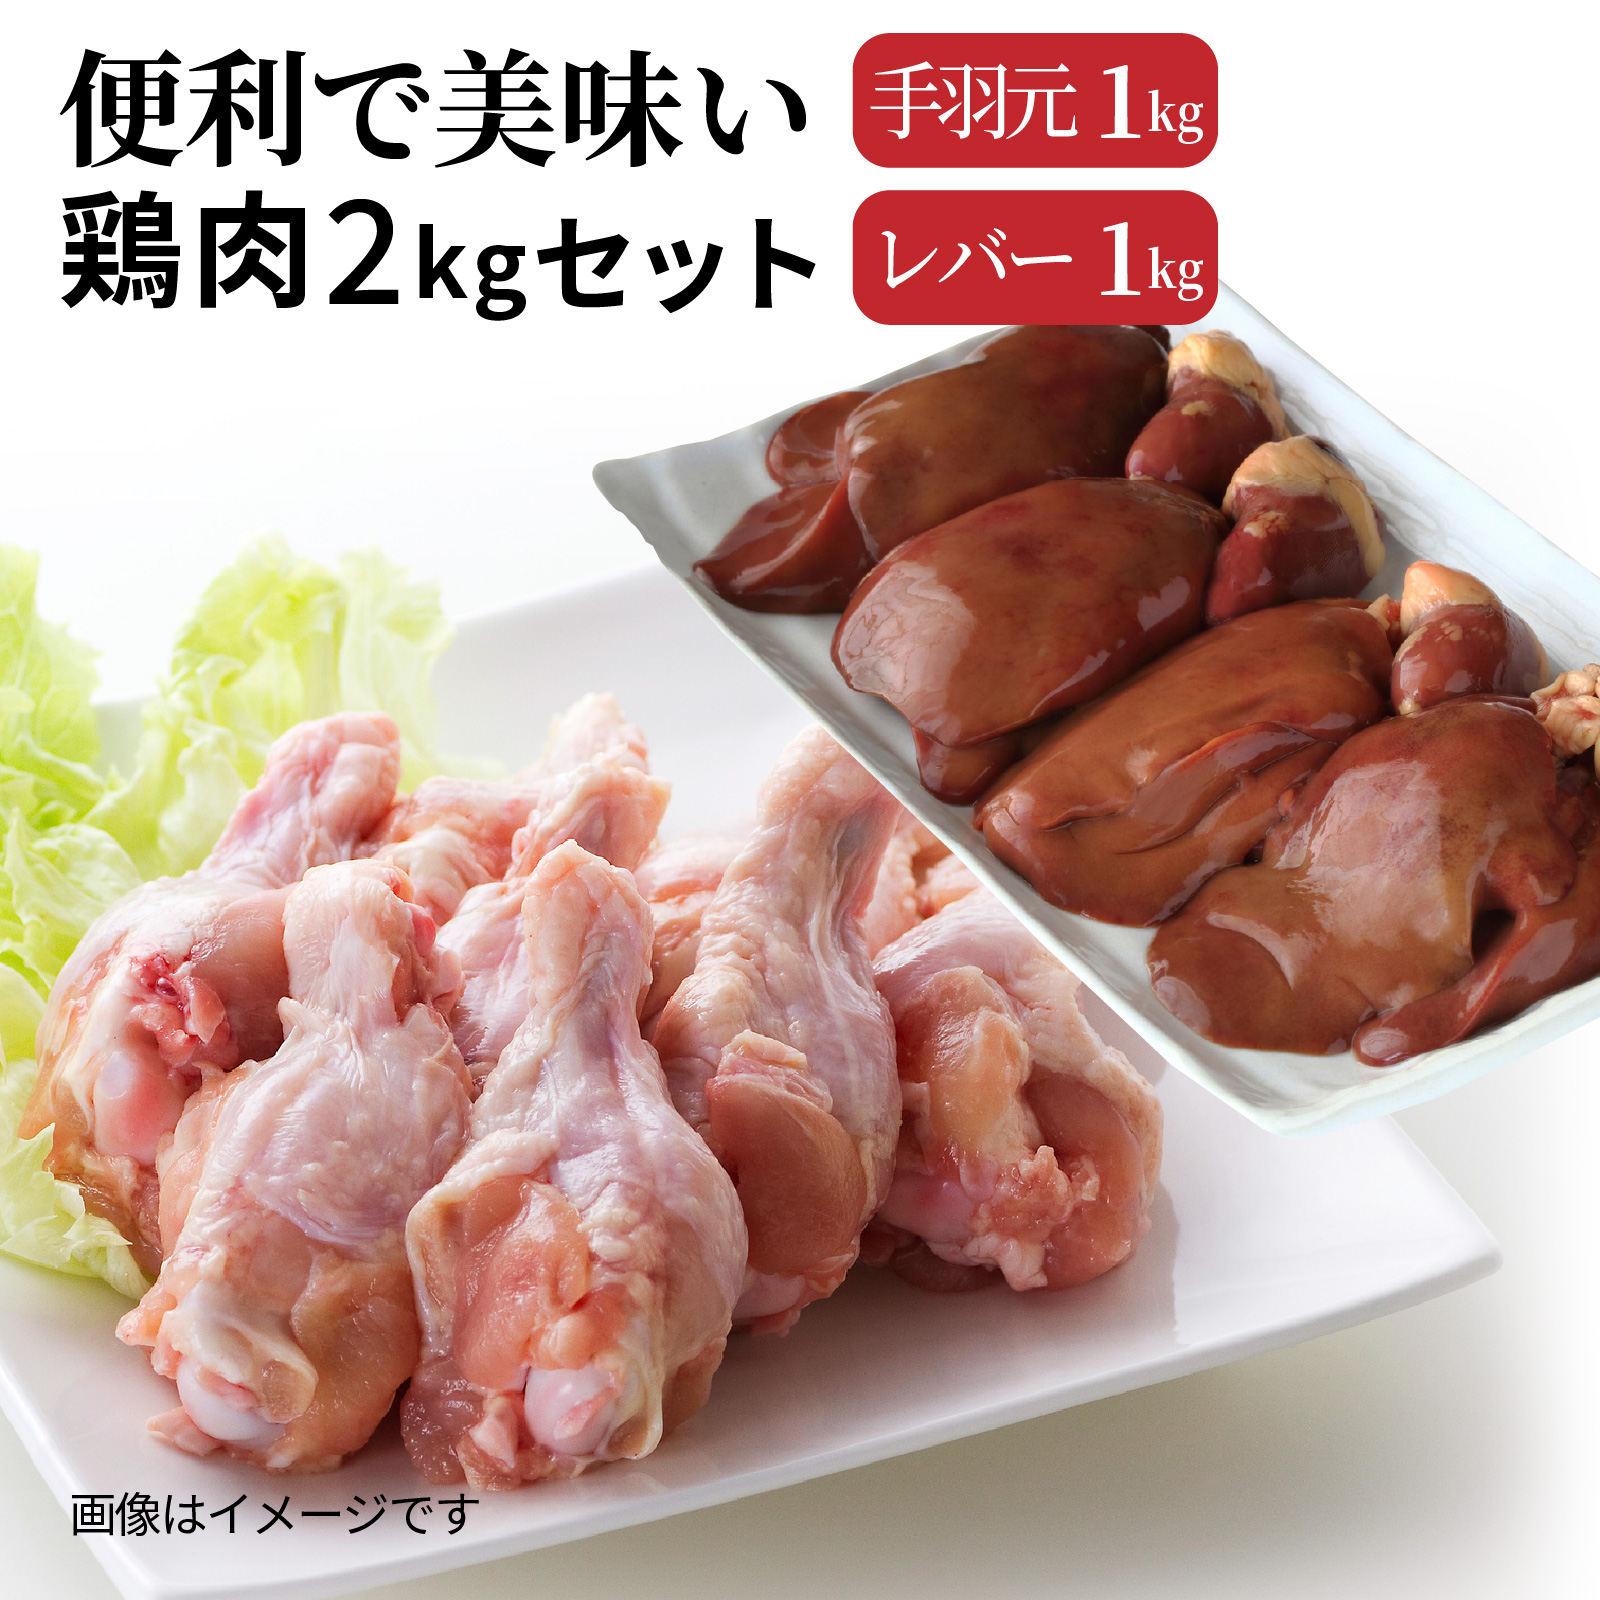 便利で美味い鶏肉2kgセット/手羽元,レバーを各1kg